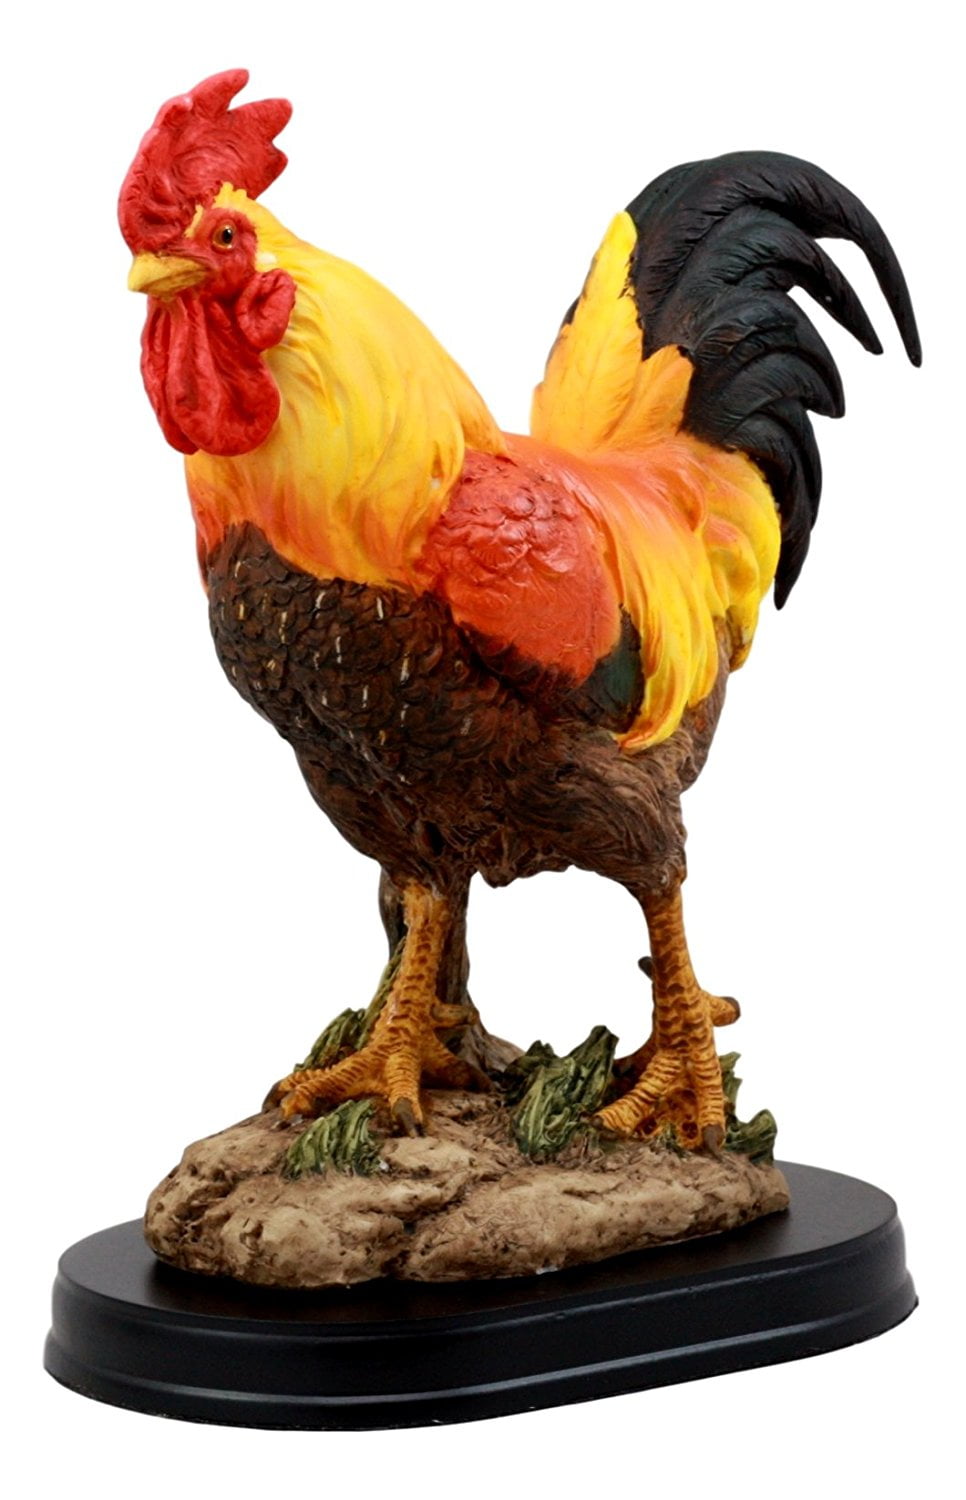 Chicken statue